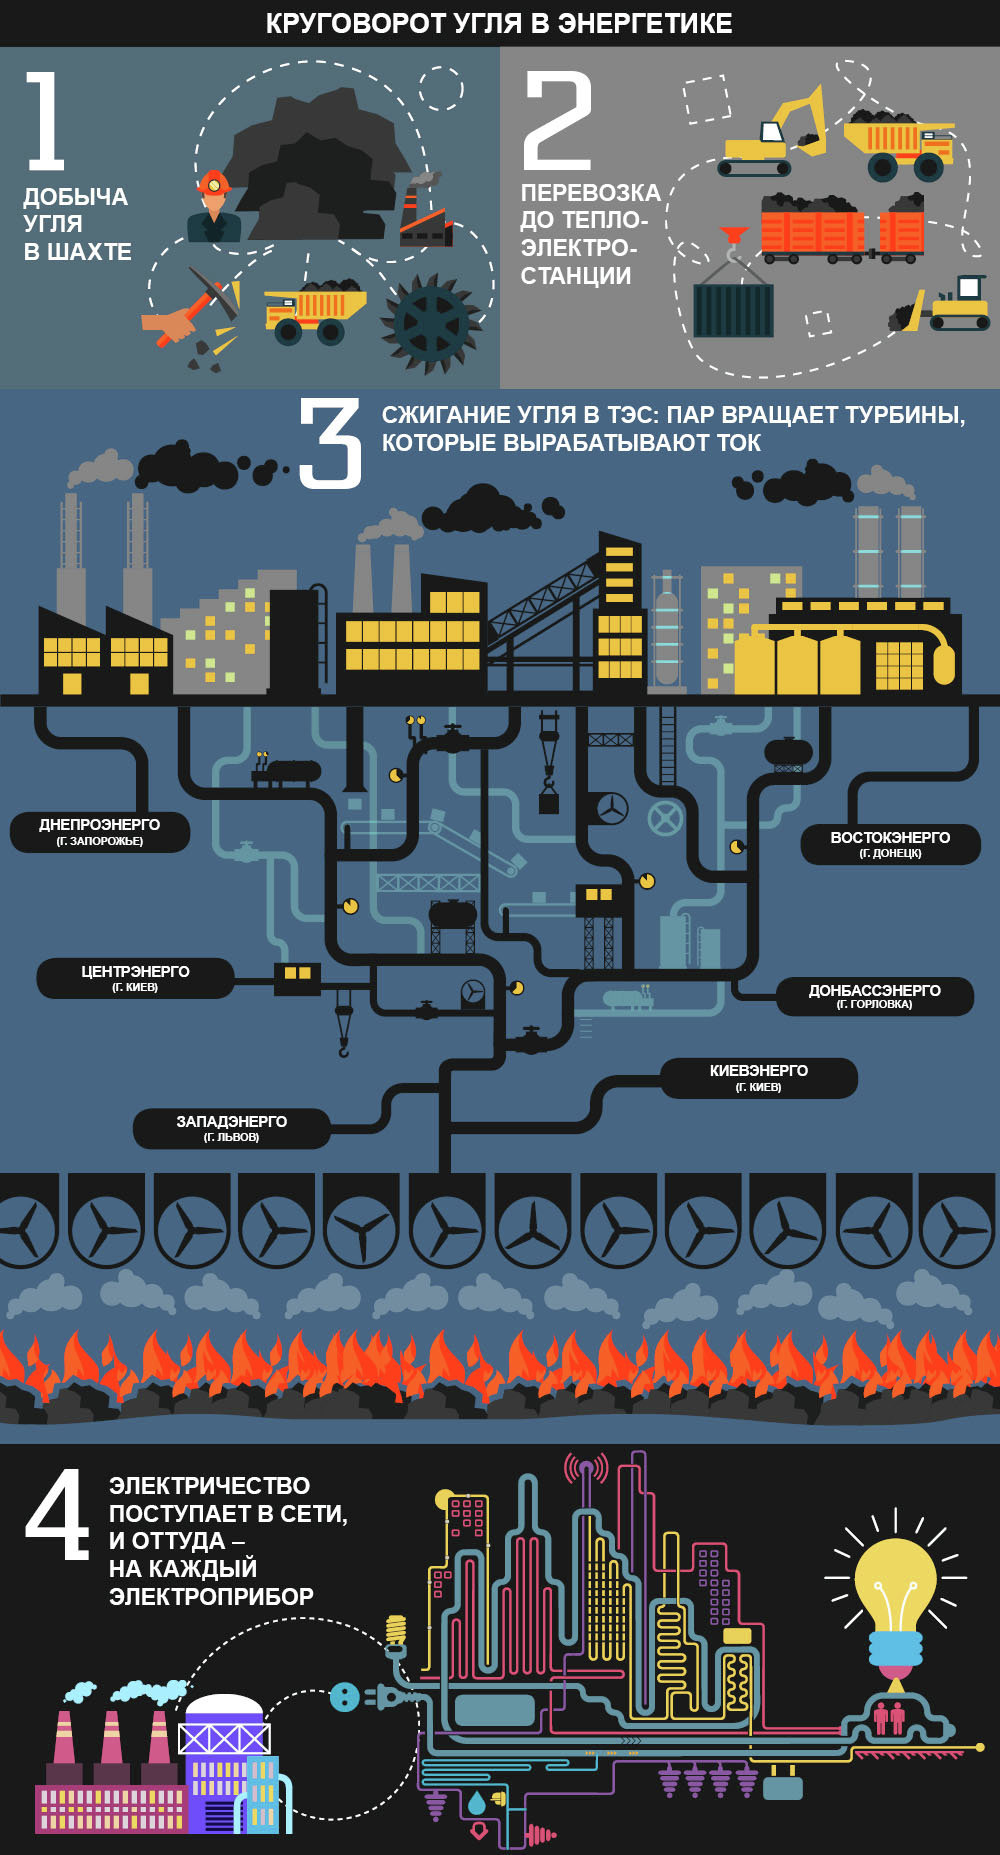 Круговорот угля в энергетике. Инфографика